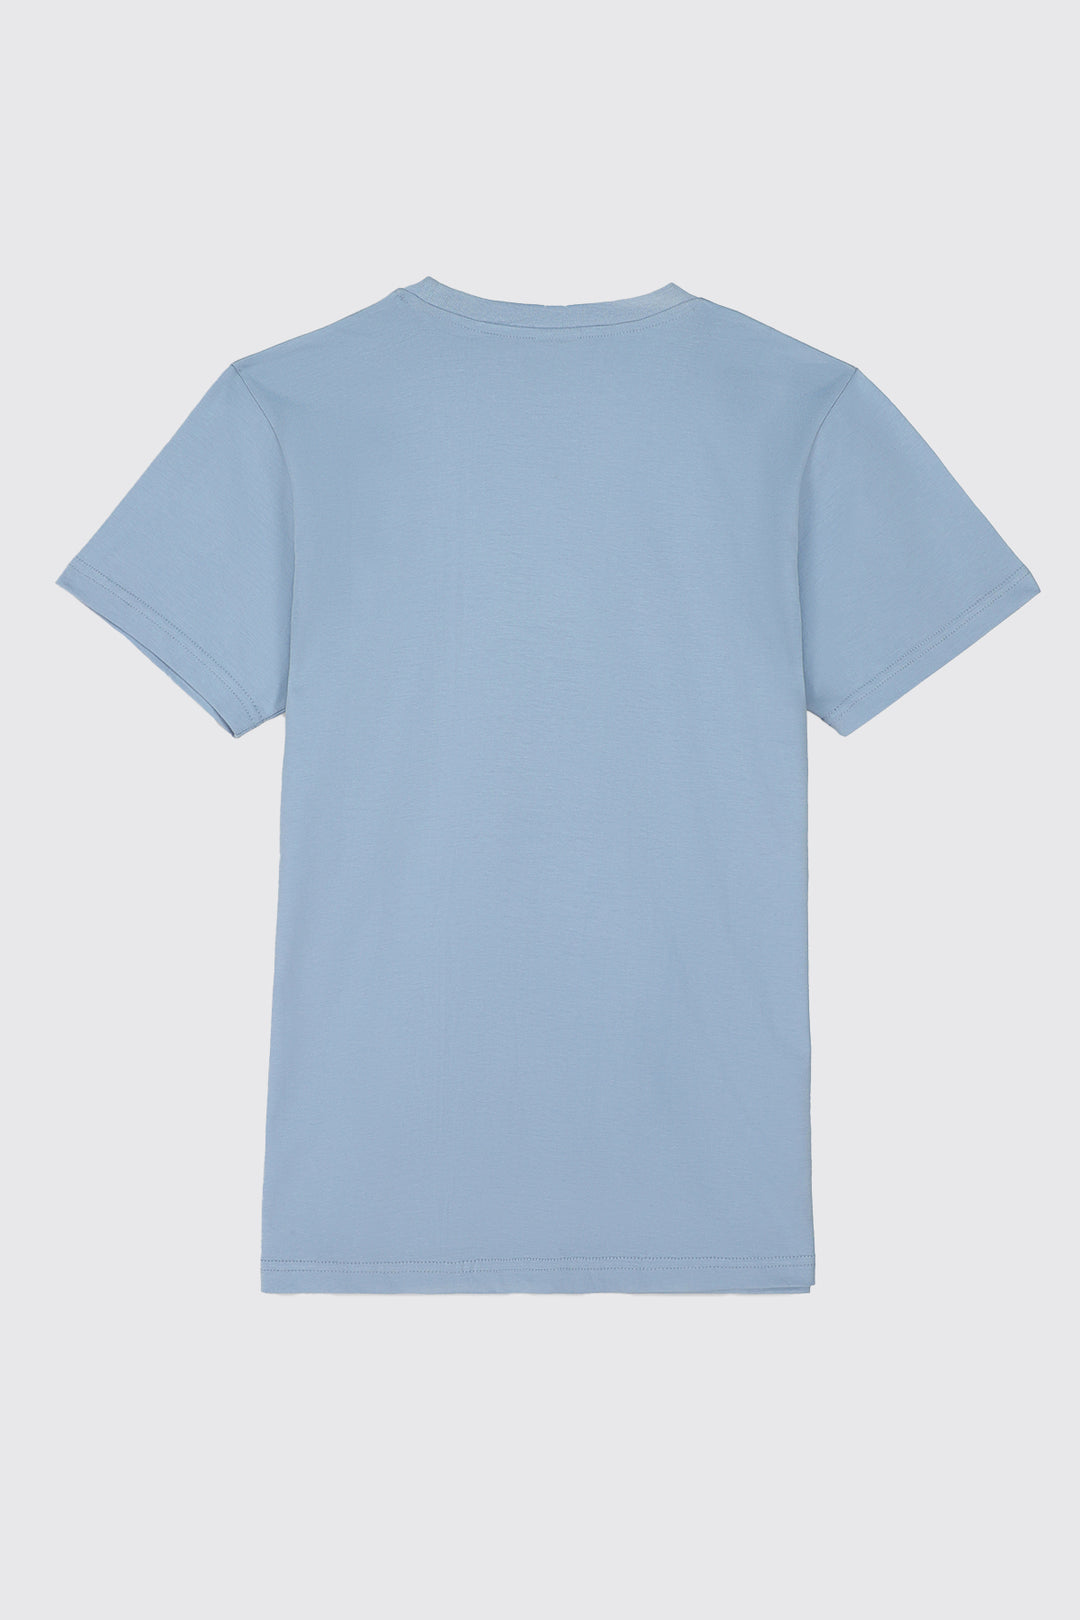 Blue SCLO Statement T-Shirt - S23 - MT0302R